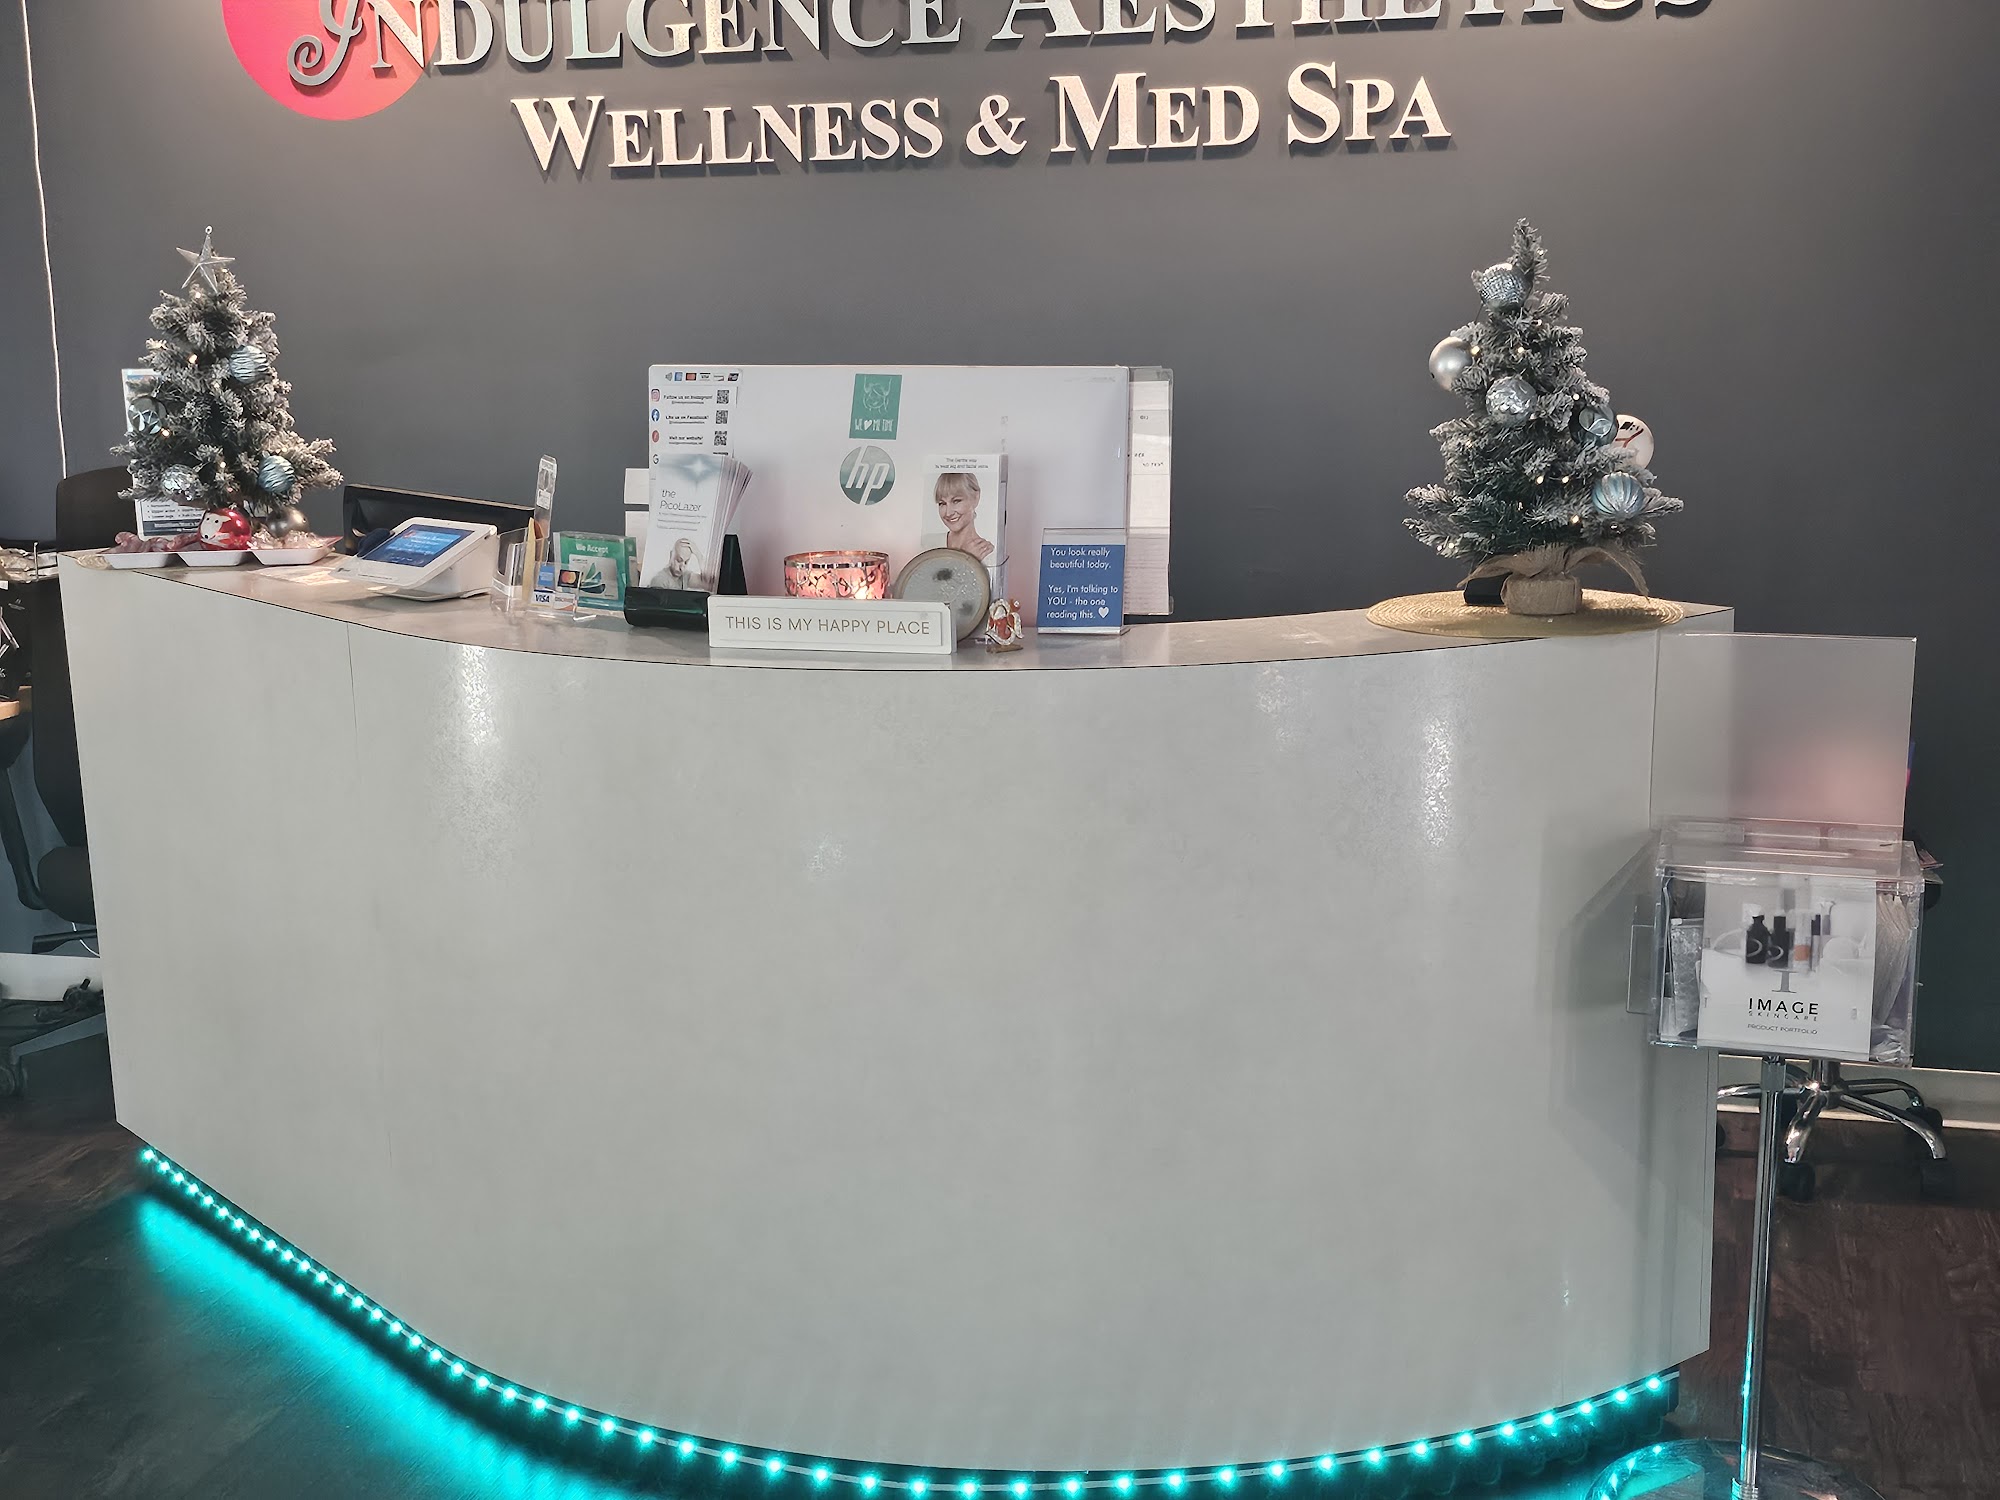 Indulgence Aesthetics Wellness & Med Spa